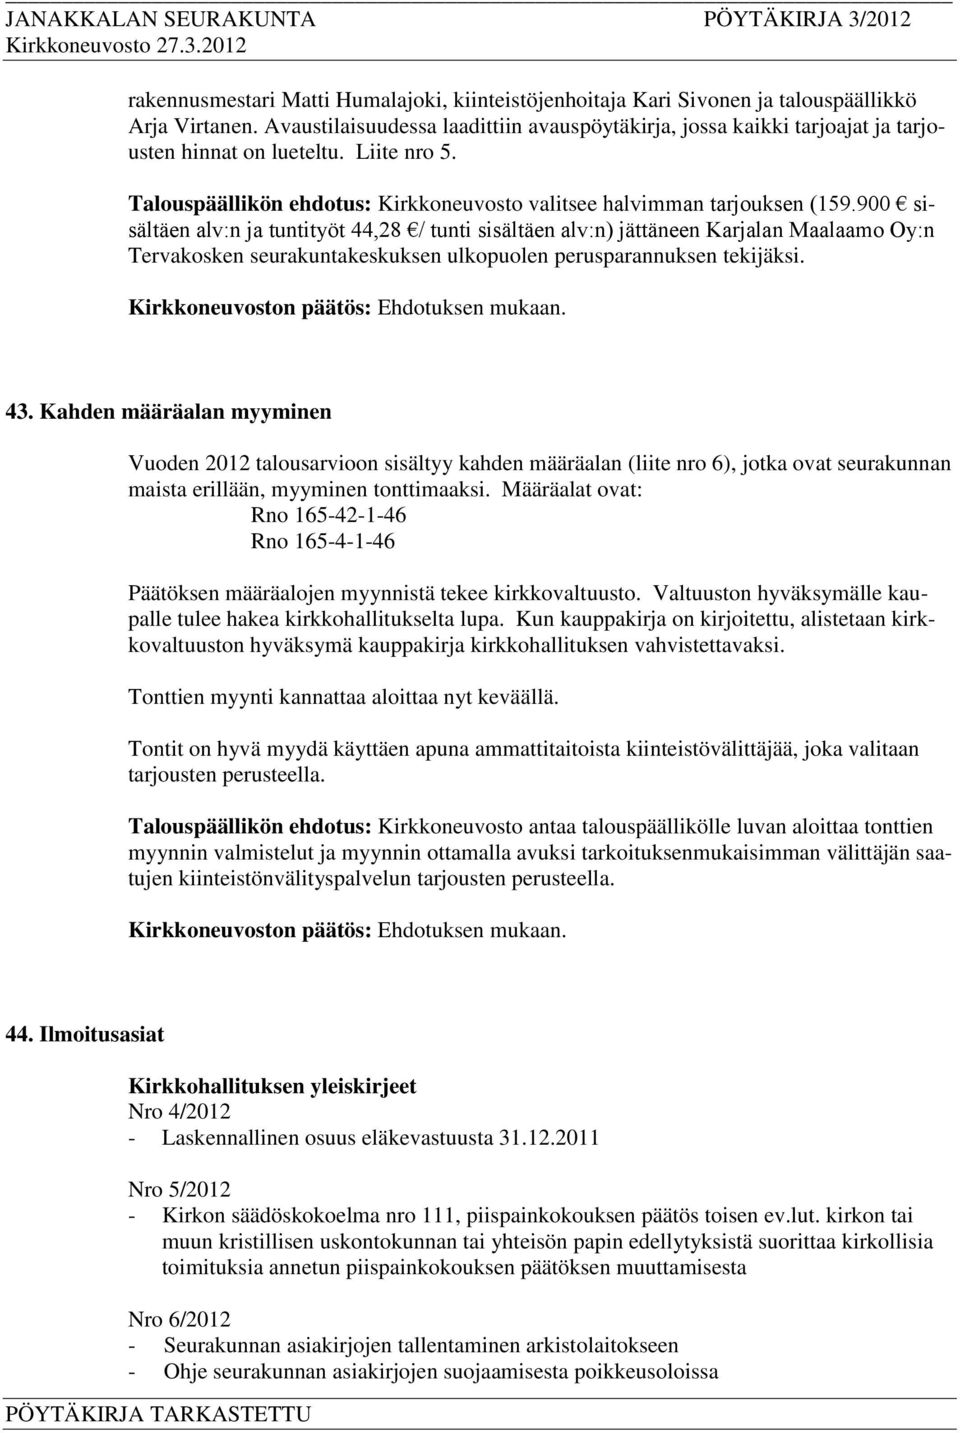 900 sisältäen alv:n ja tuntityöt 44,28 / tunti sisältäen alv:n) jättäneen Karjalan Maalaamo Oy:n Tervakosken seurakuntakeskuksen ulkopuolen perusparannuksen tekijäksi. 43.